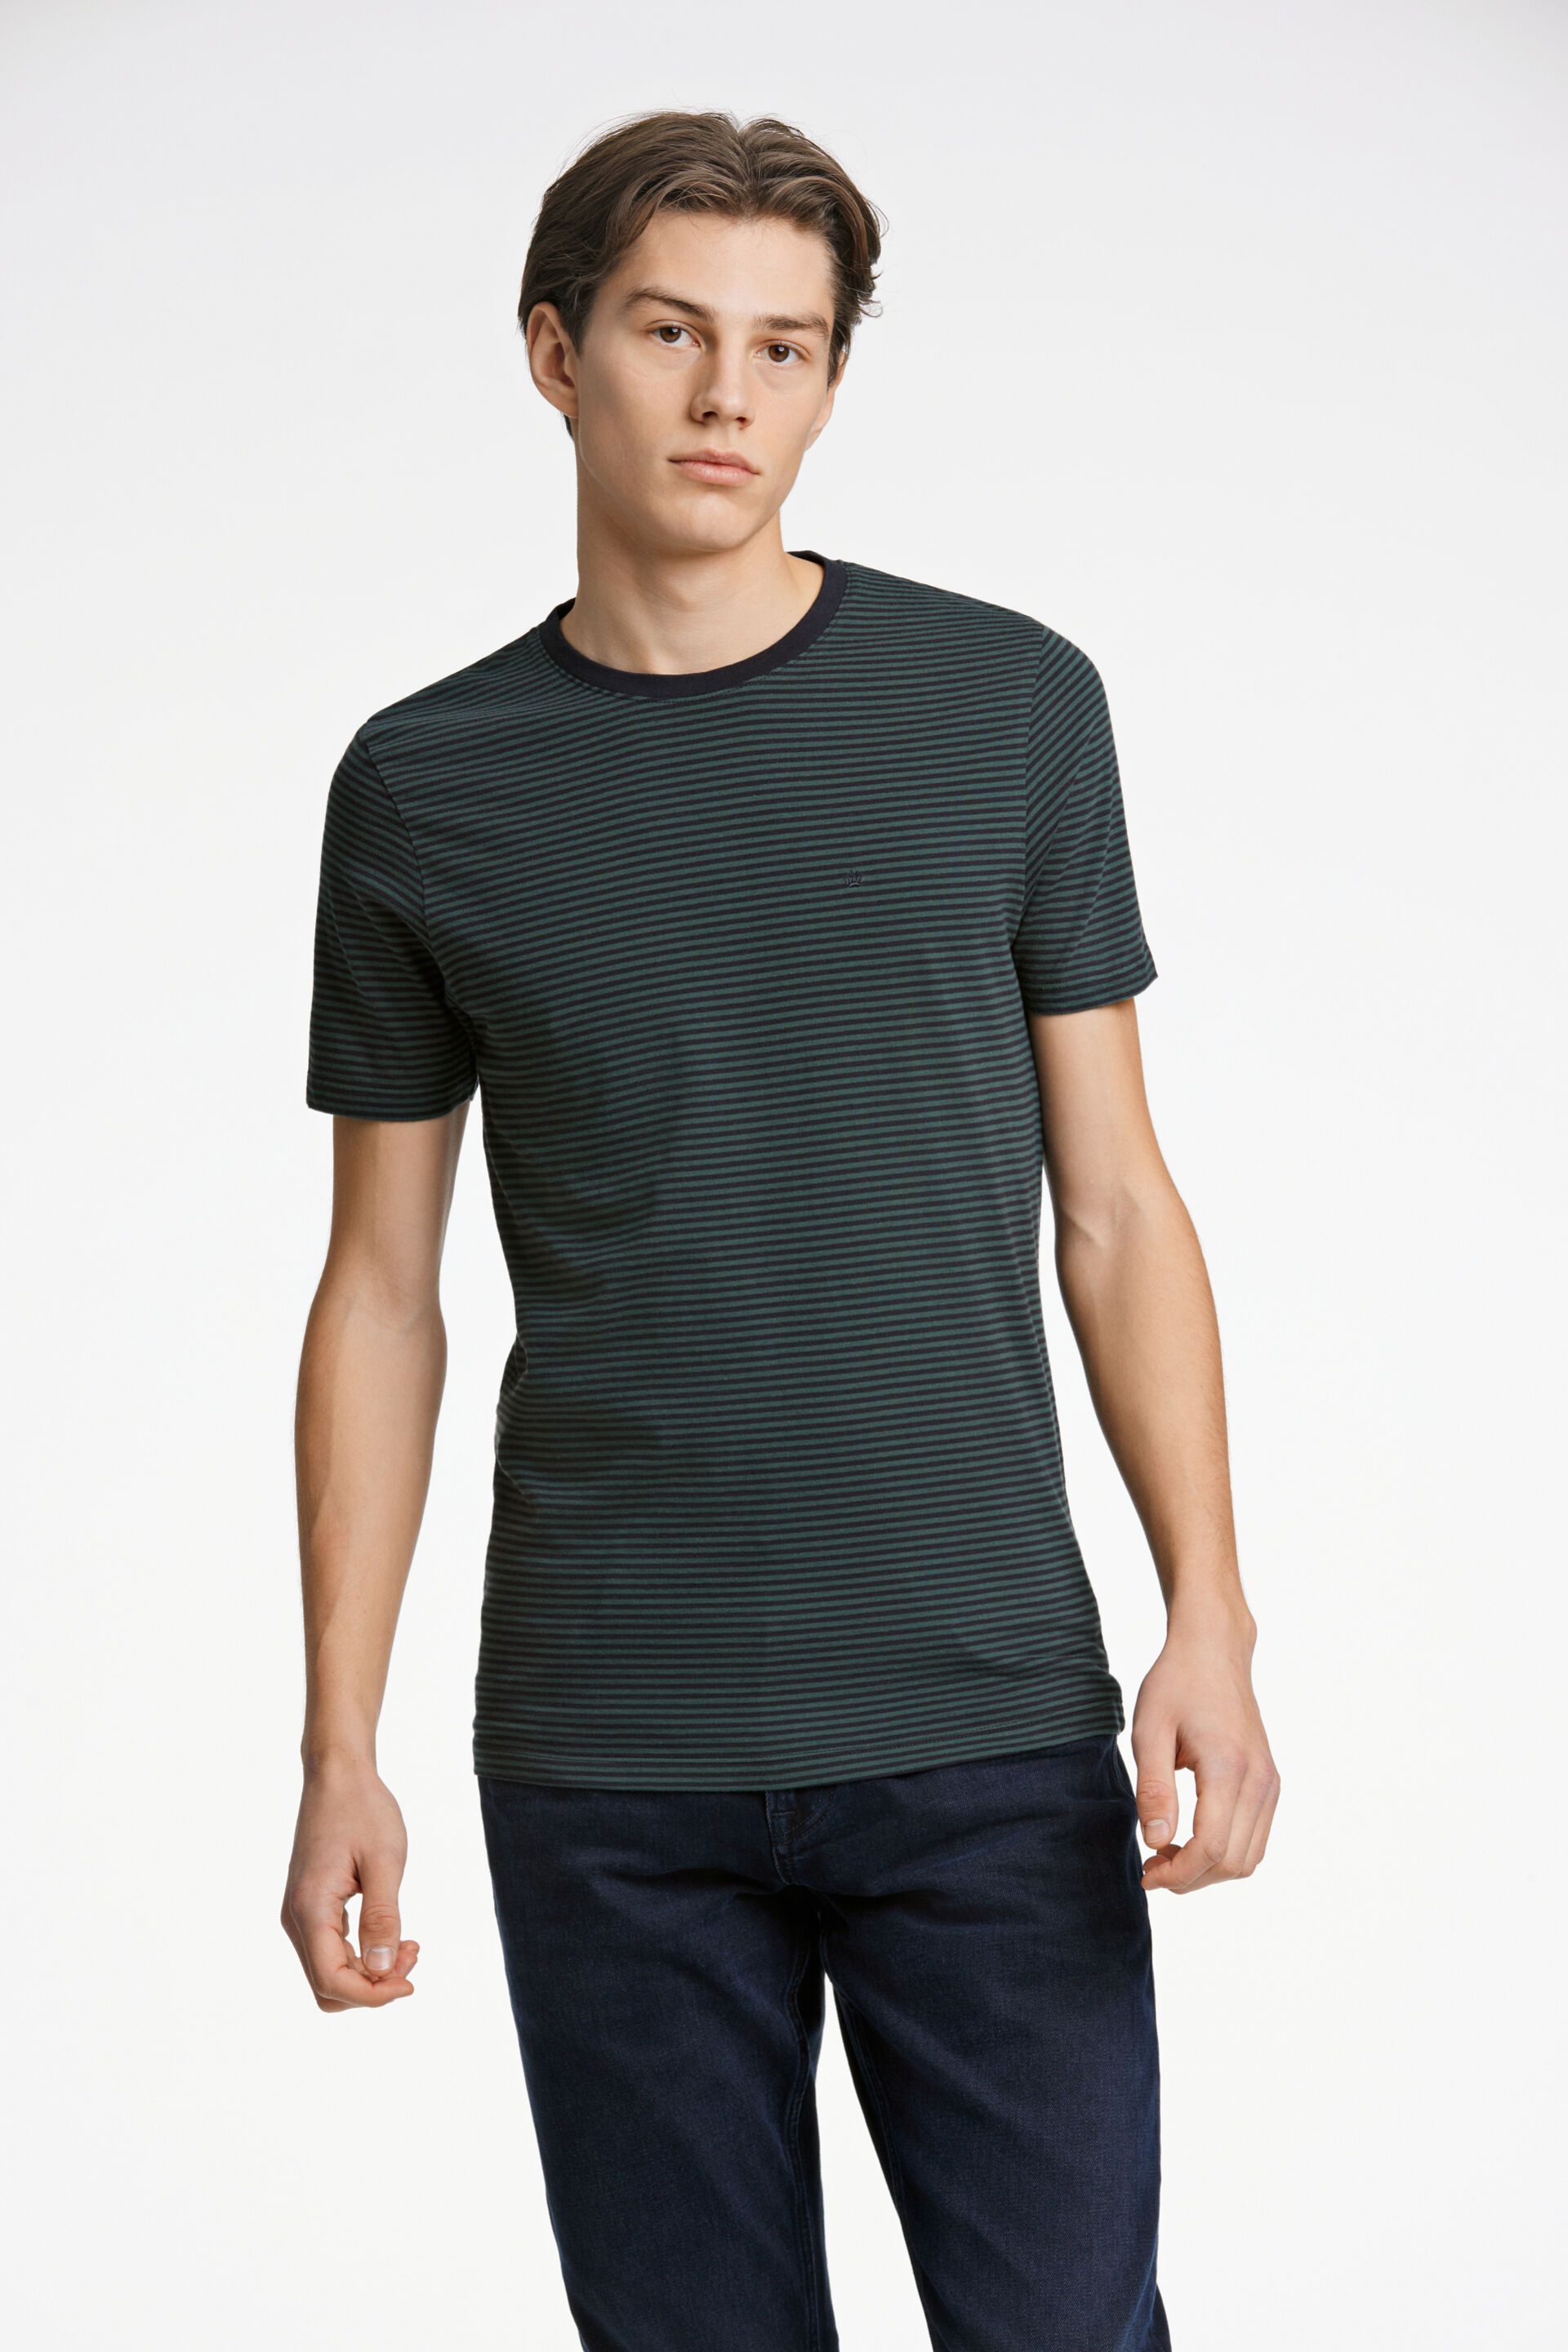 Junk de Luxe  T-shirt Grøn 60-452035